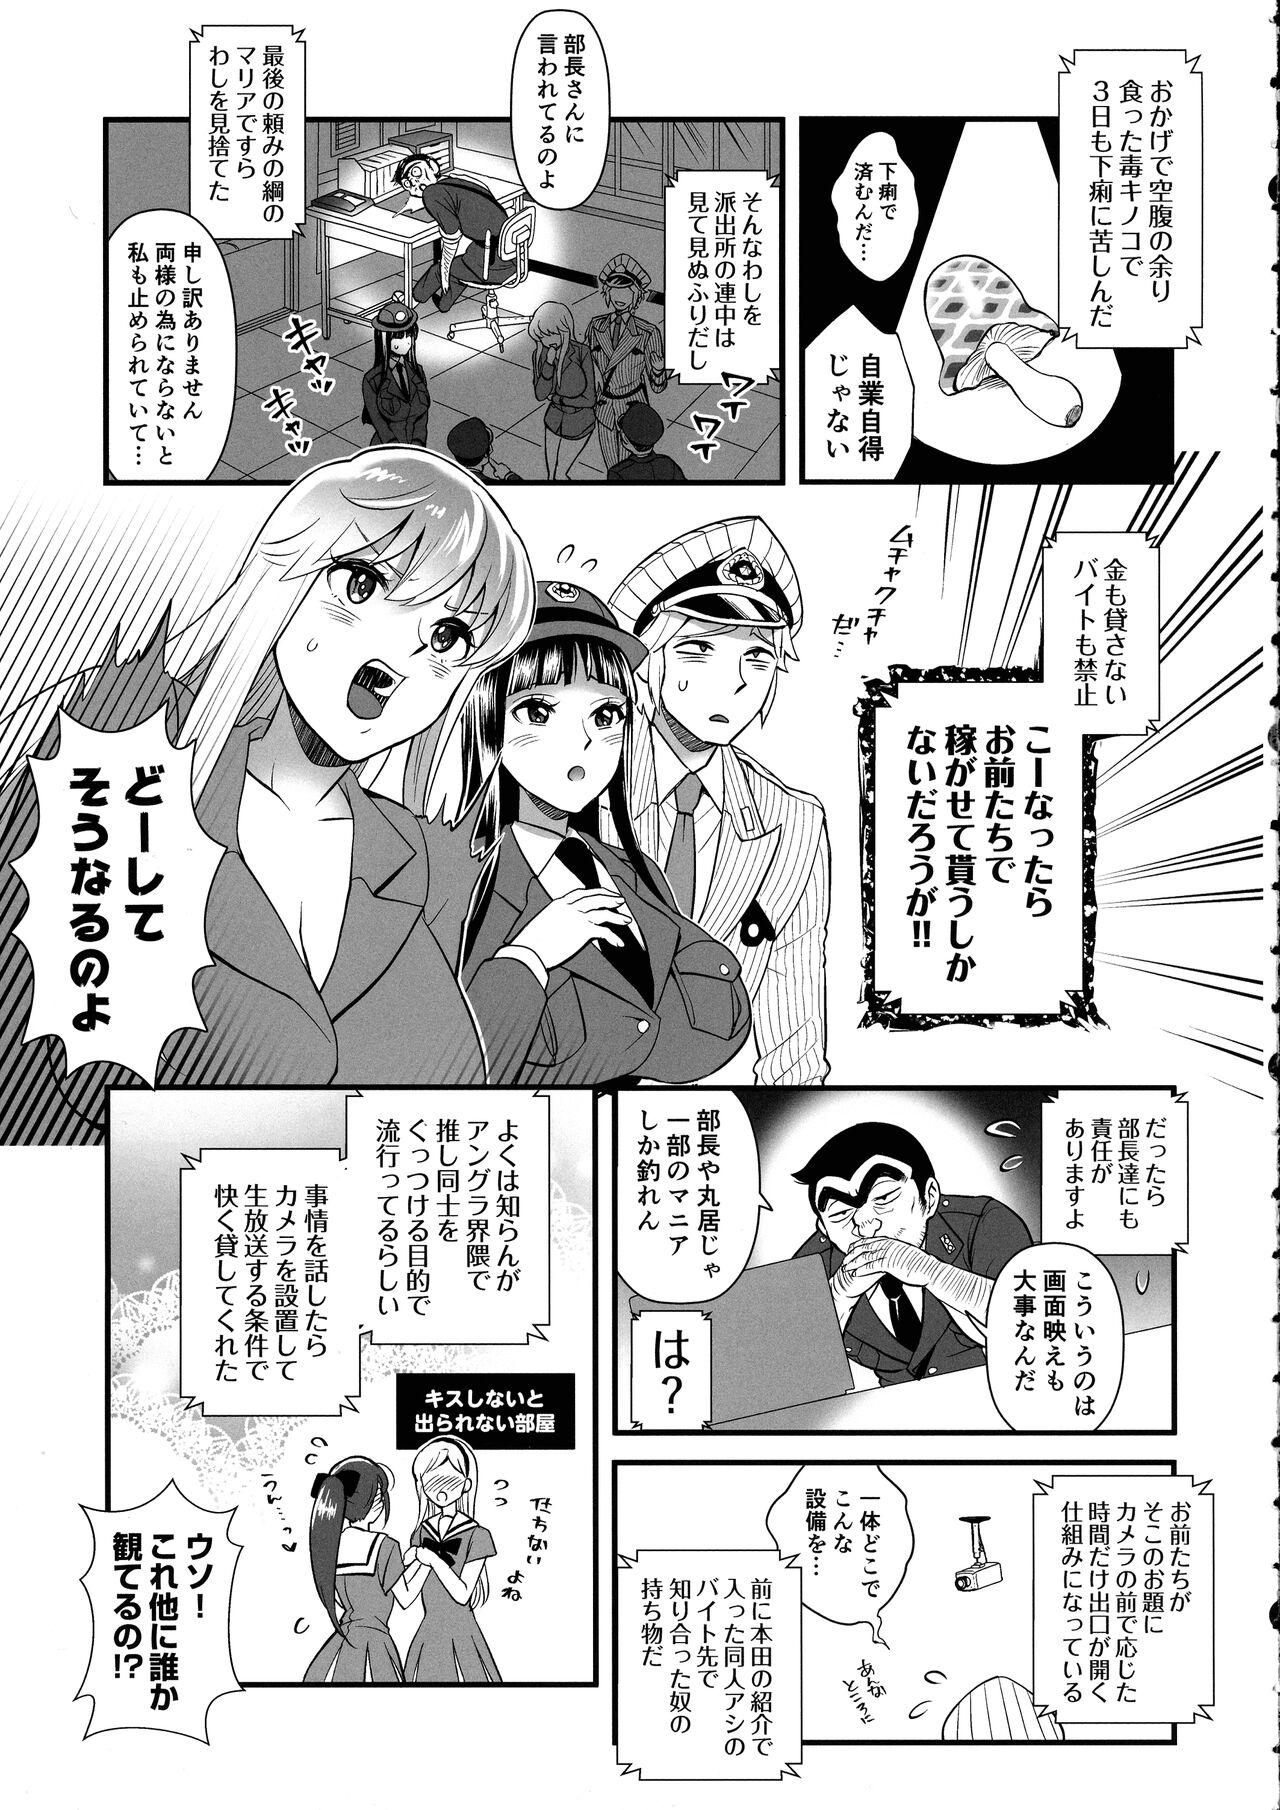 Reiko & Maria & Nakagawa ga Ogeretsuna Koto o Shinai to derarenai Heya no Maki 6